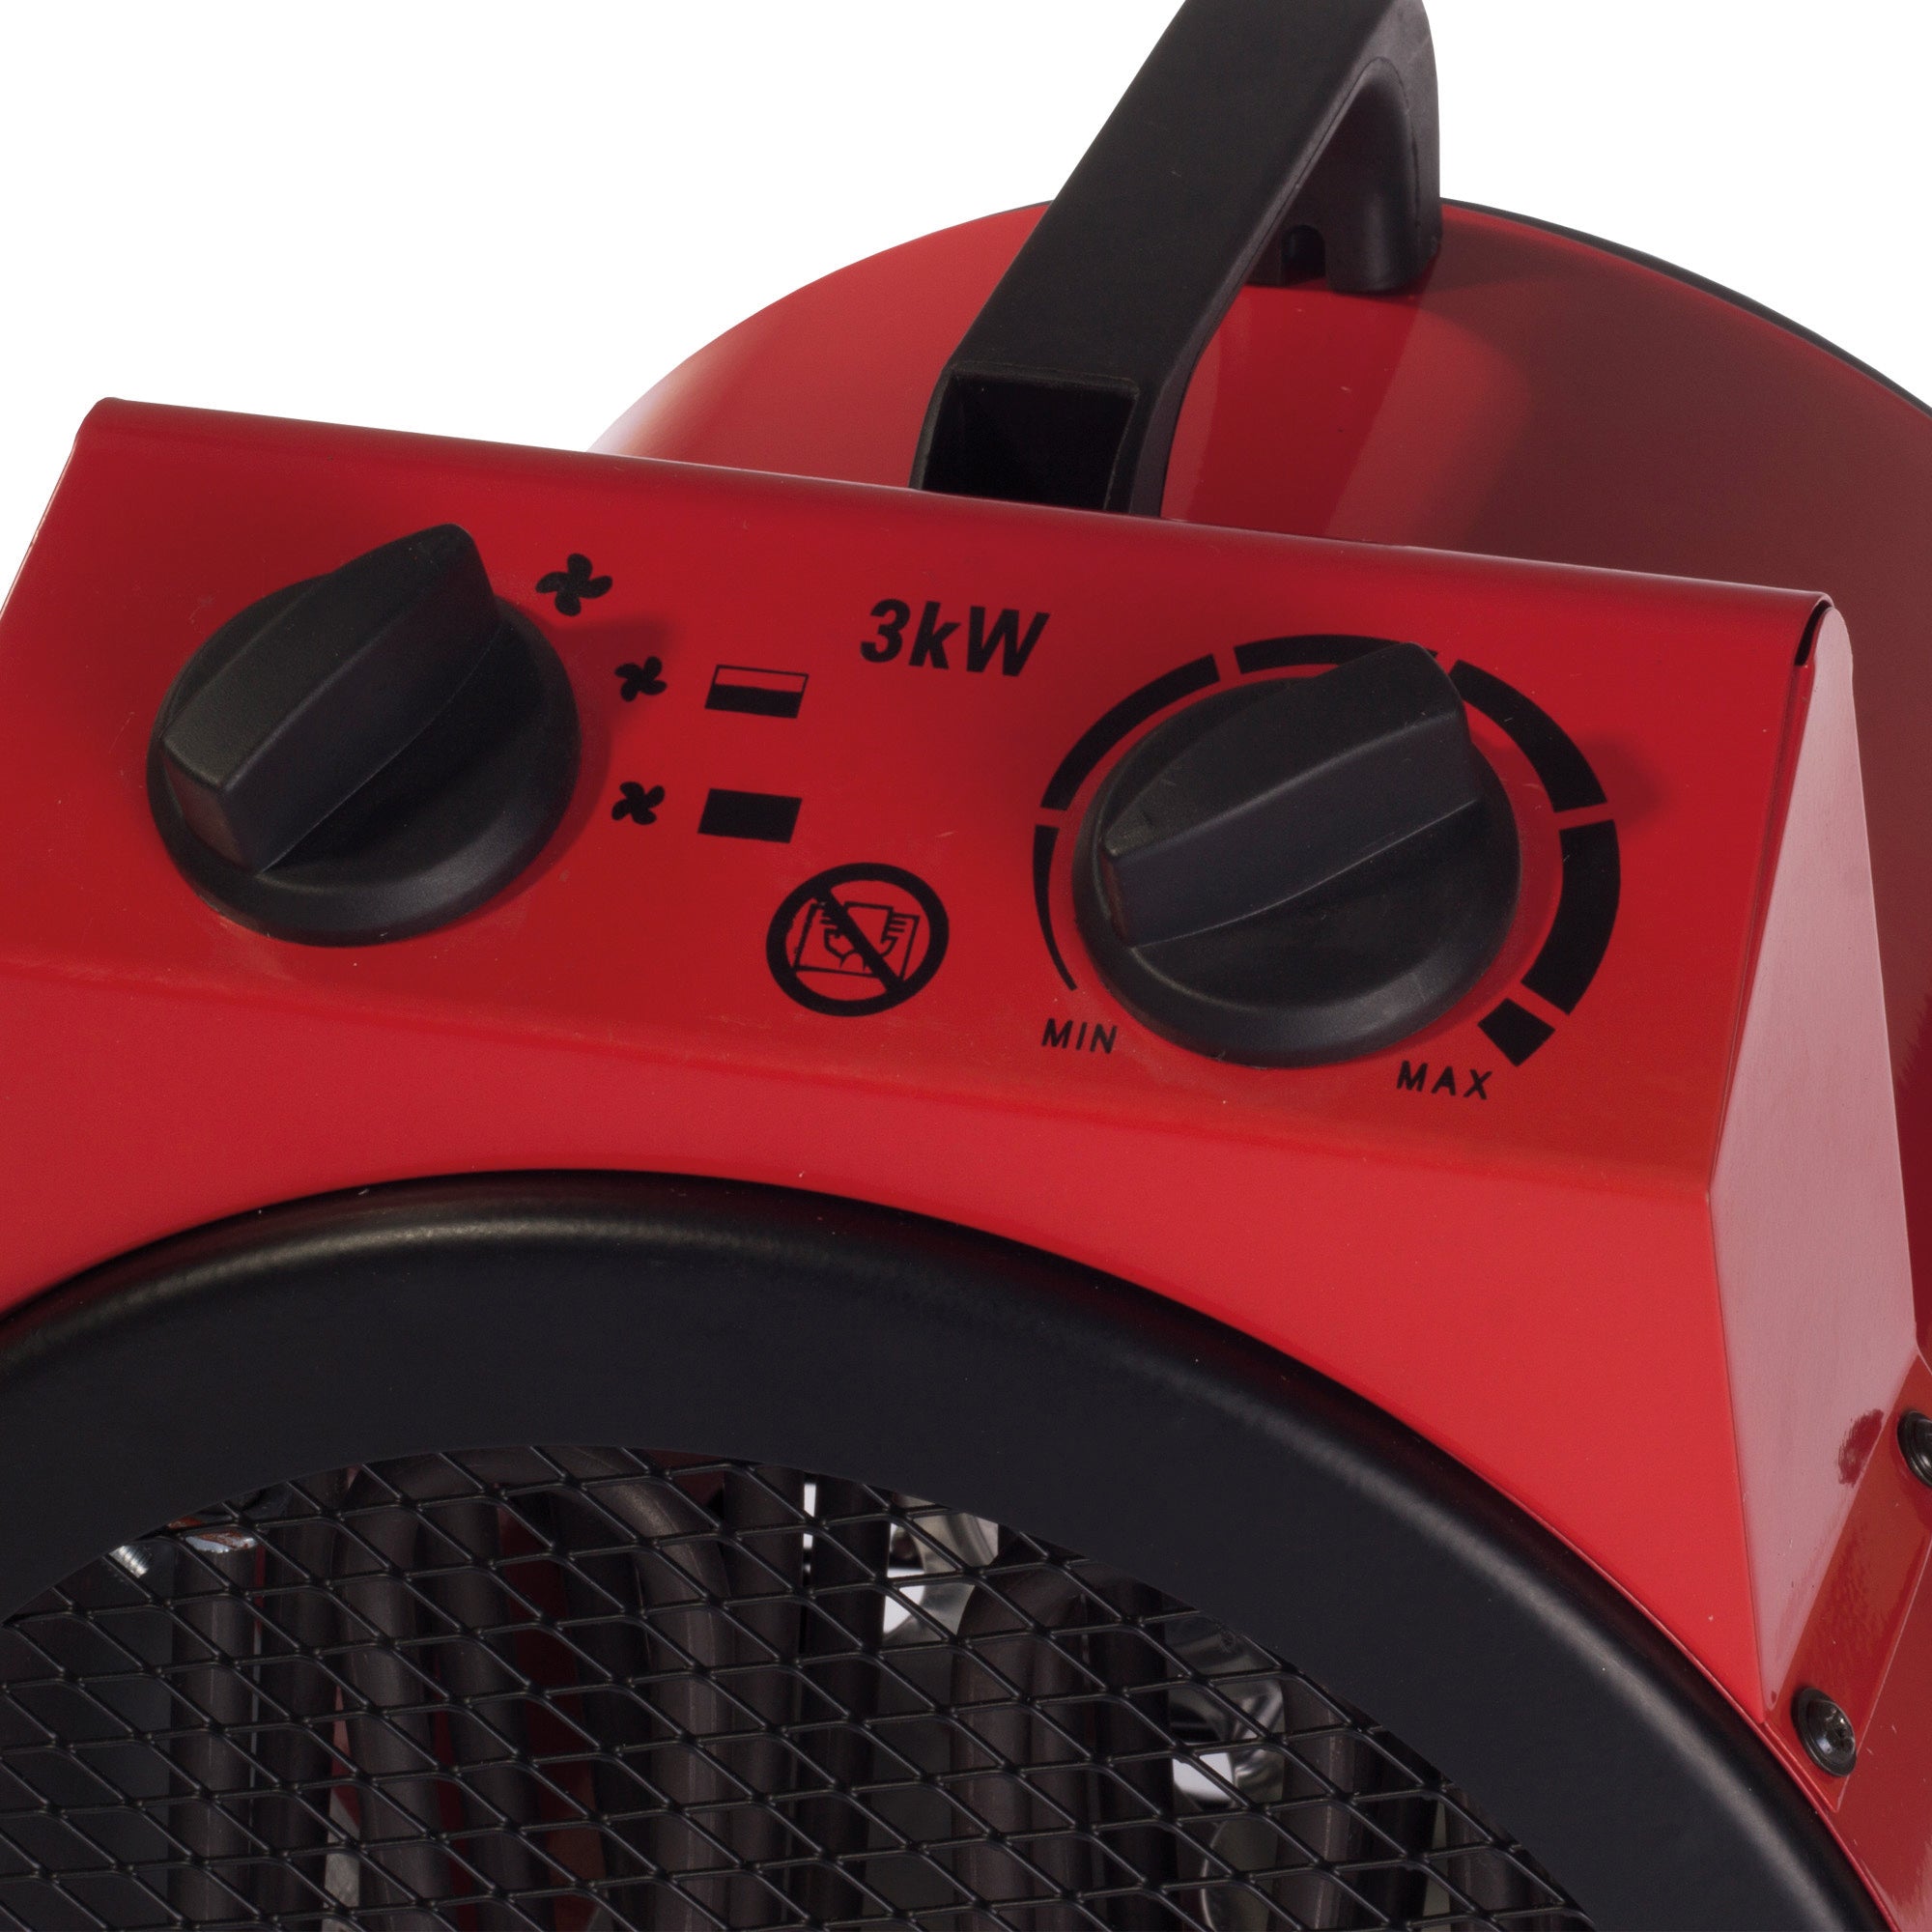 Commercial Drum Fan Heater, 2 Heat Settings, 3000W, Red